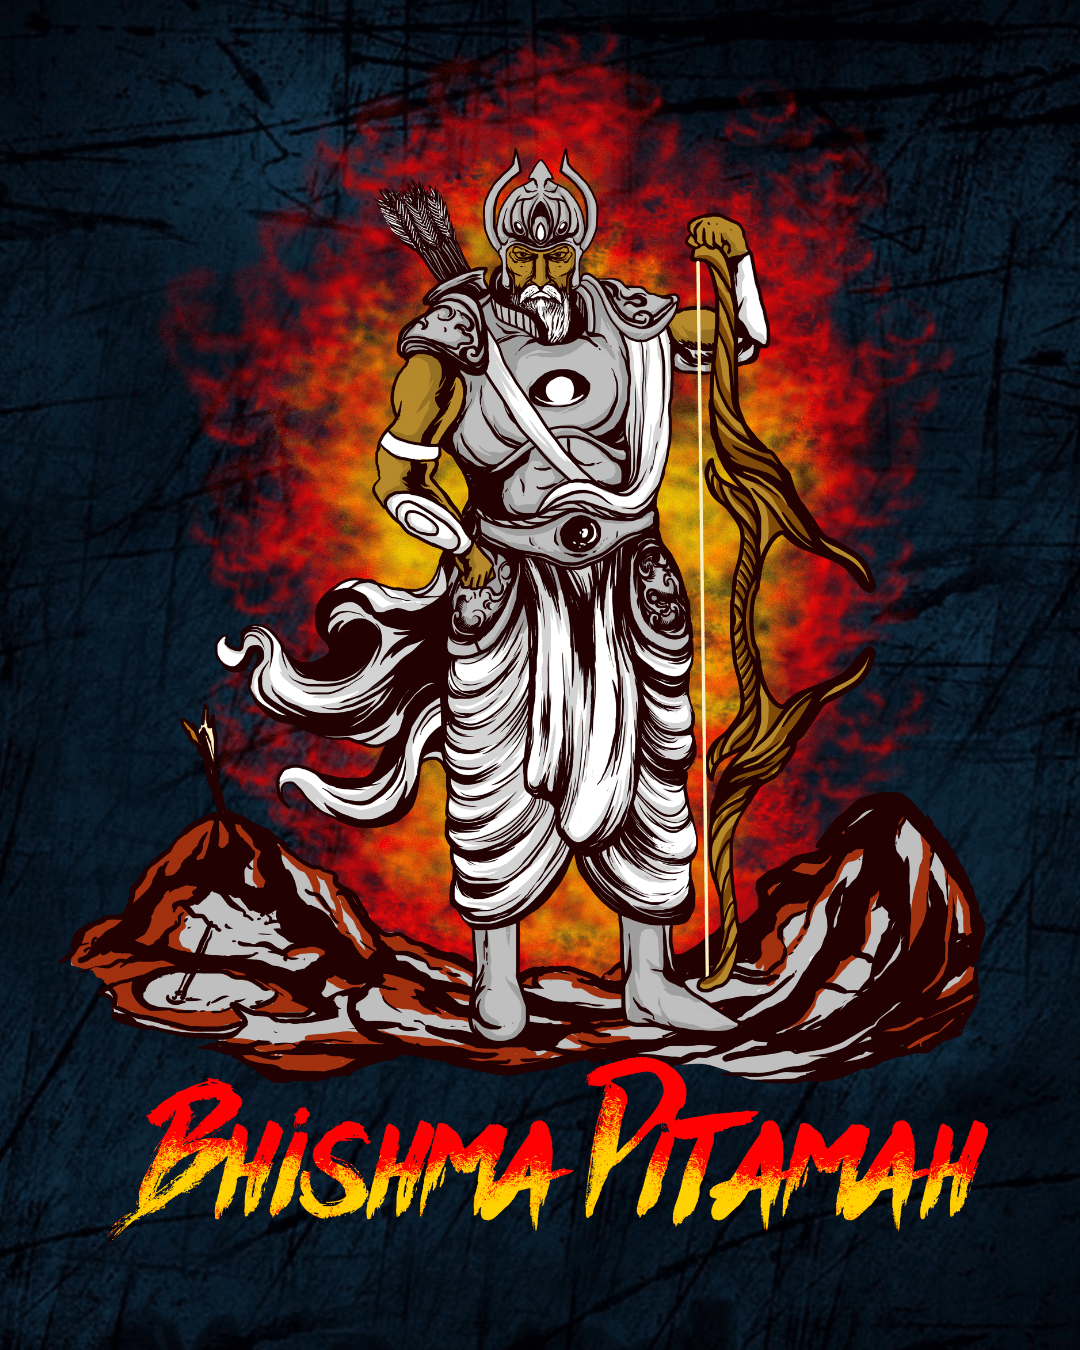 Power of Bhishma Pitamah: - Most powerful warrior of Mahabharata